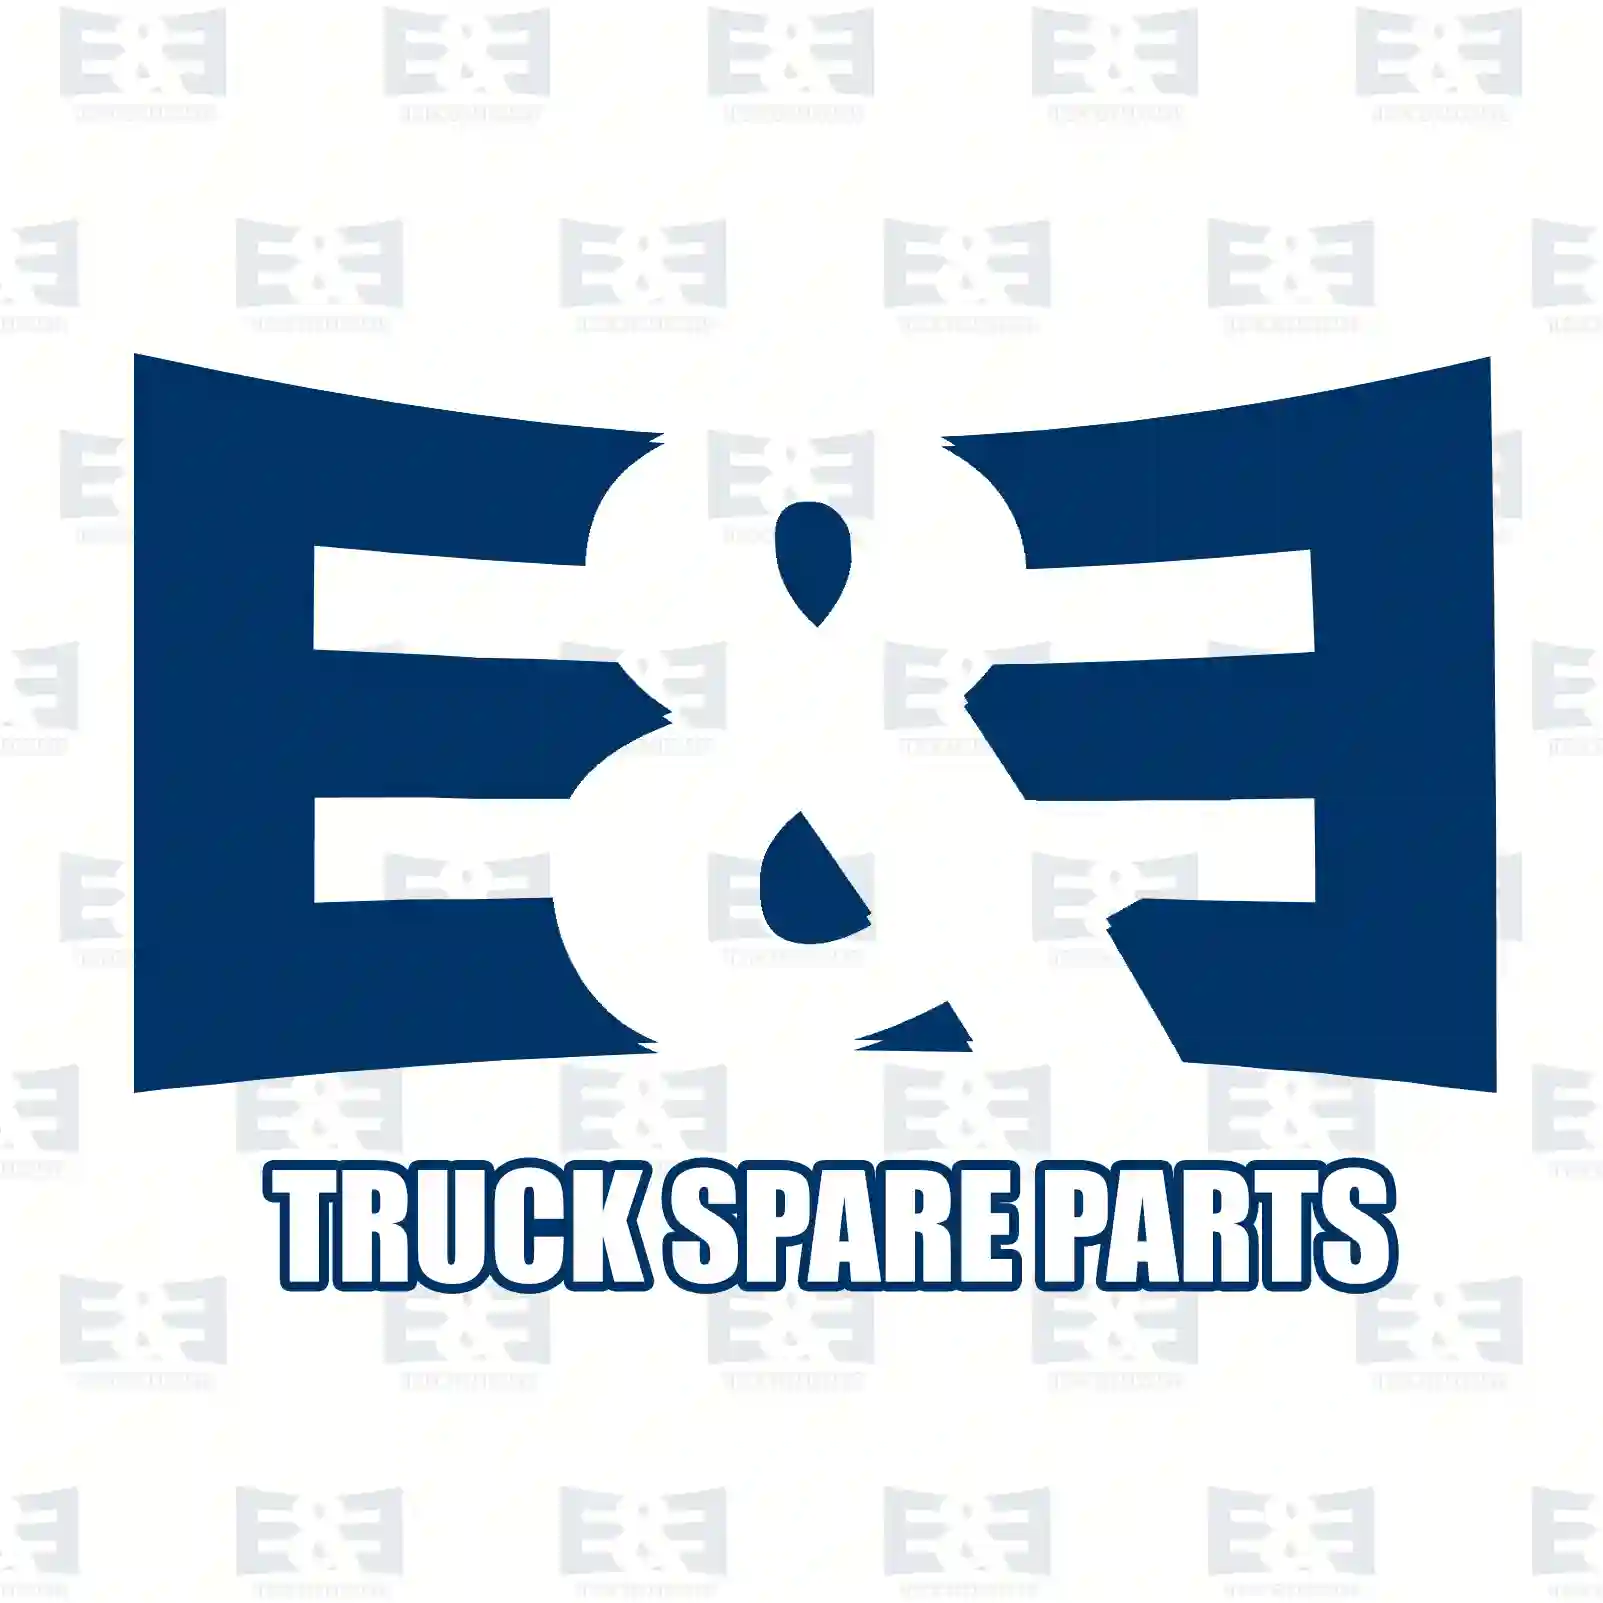 Tension roller, 2E2201623, 074109243F, 074109243G, 074109243J, 074109243R, 074109243F, 074109243G, 074109243J, 074109243R, 078109243G, 078109243J, ZG02135-0008 ||  2E2201623 E&E Truck Spare Parts | Truck Spare Parts, Auotomotive Spare Parts Tension roller, 2E2201623, 074109243F, 074109243G, 074109243J, 074109243R, 074109243F, 074109243G, 074109243J, 074109243R, 078109243G, 078109243J, ZG02135-0008 ||  2E2201623 E&E Truck Spare Parts | Truck Spare Parts, Auotomotive Spare Parts